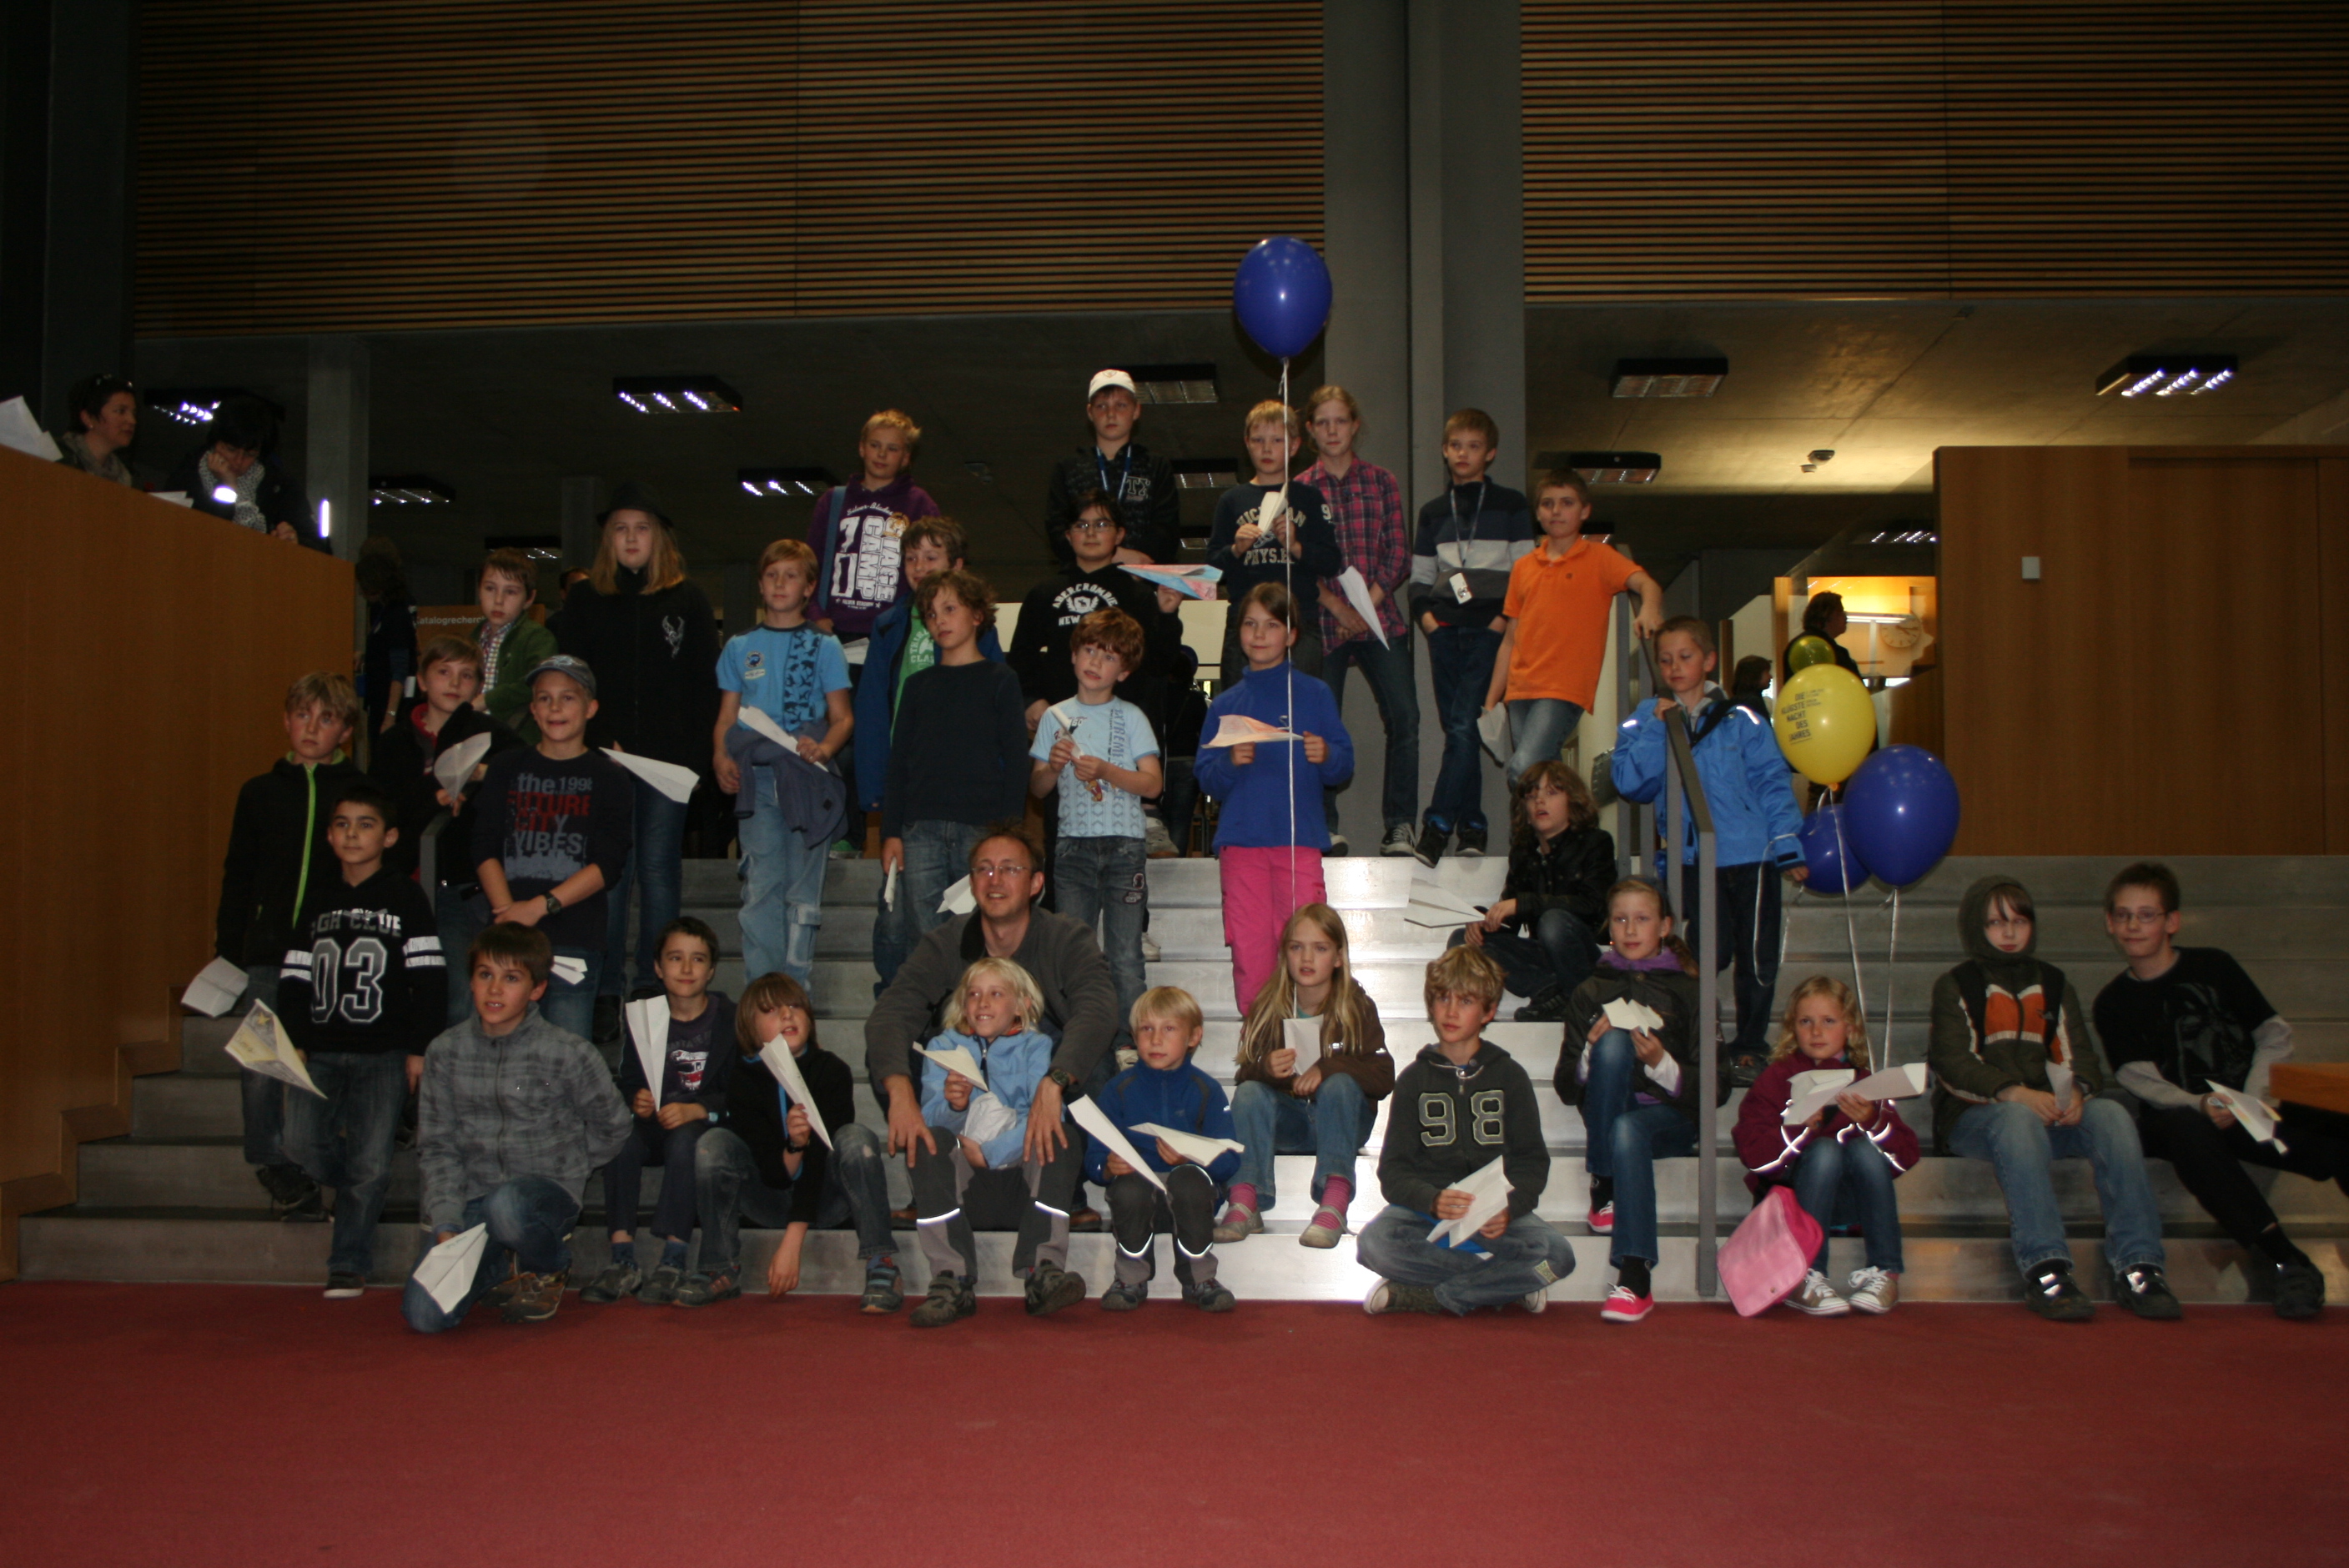 Papierfliegerwettbewerb - die Teilnehmer